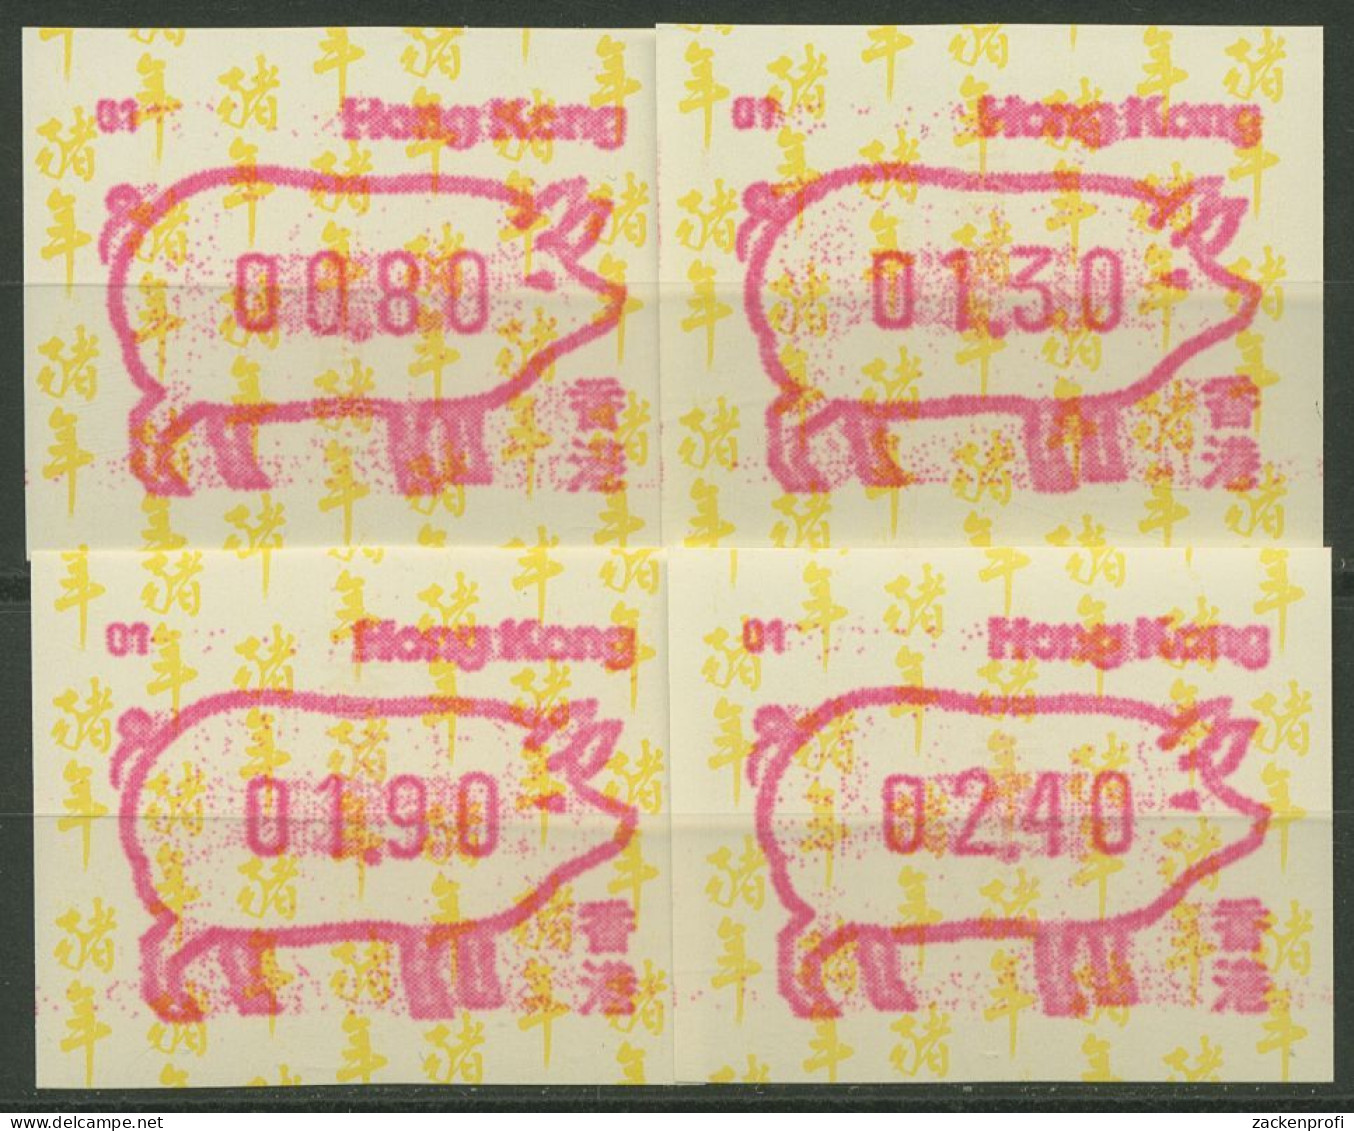 Hongkong 1995 Jahr Des Schweins Automatenmarke 10.1 S1 Automat 01 Postfrisch - Automaten